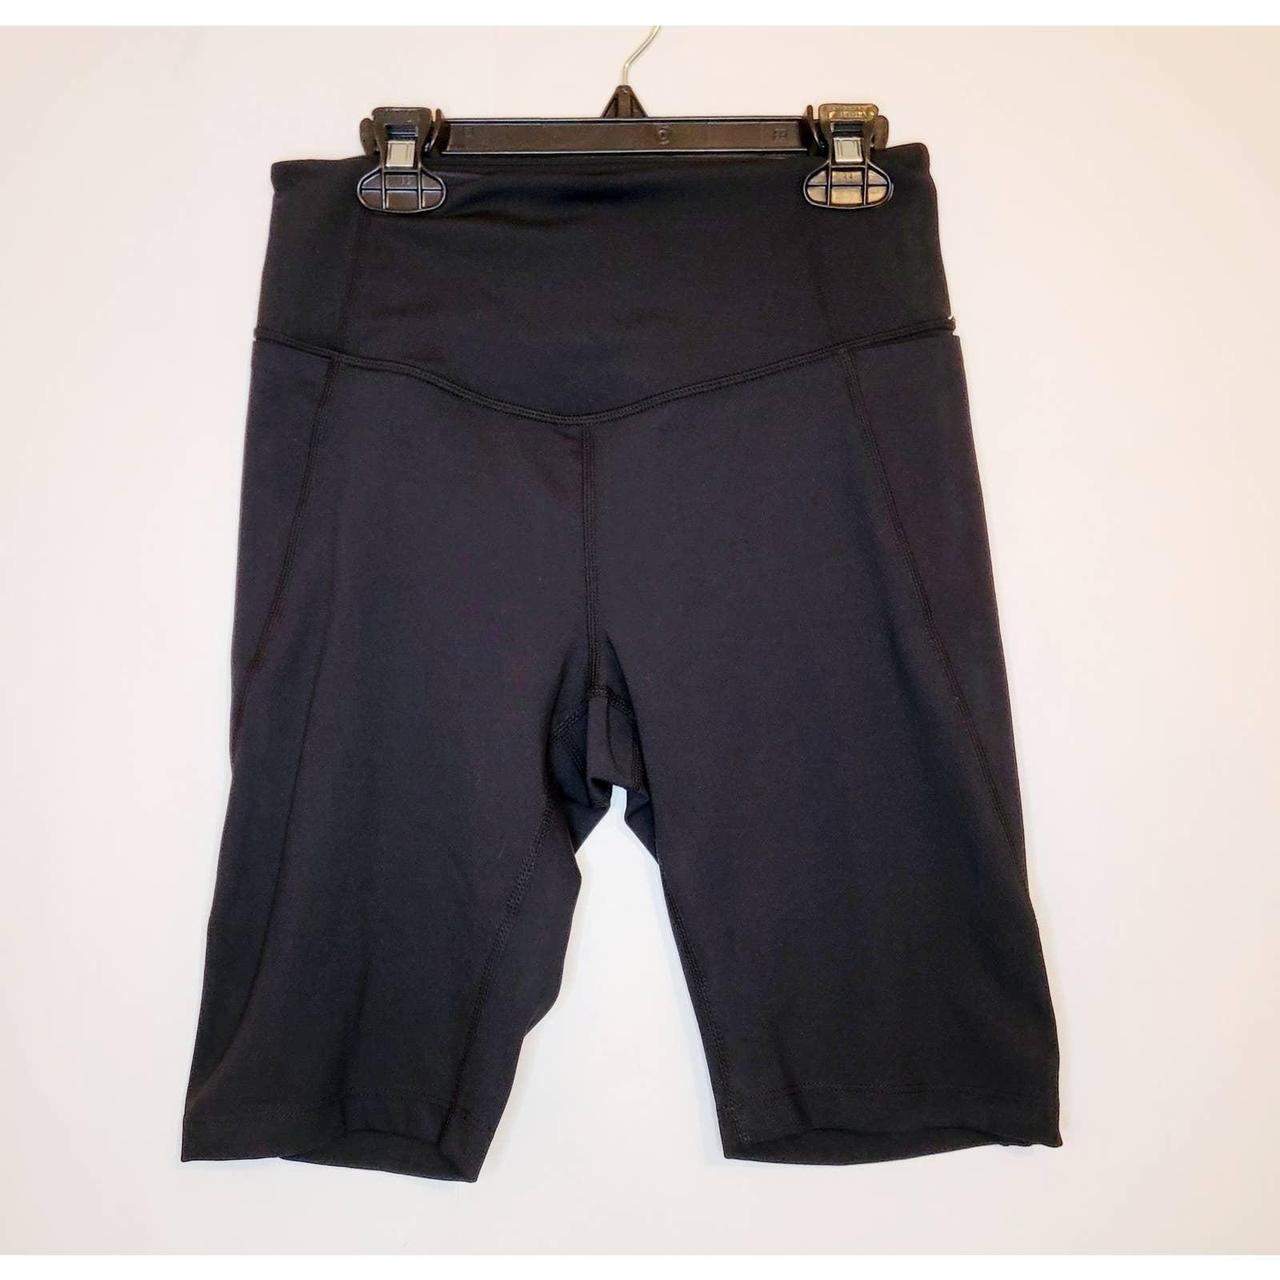 Zella black leggings size small, pockets on side, in - Depop